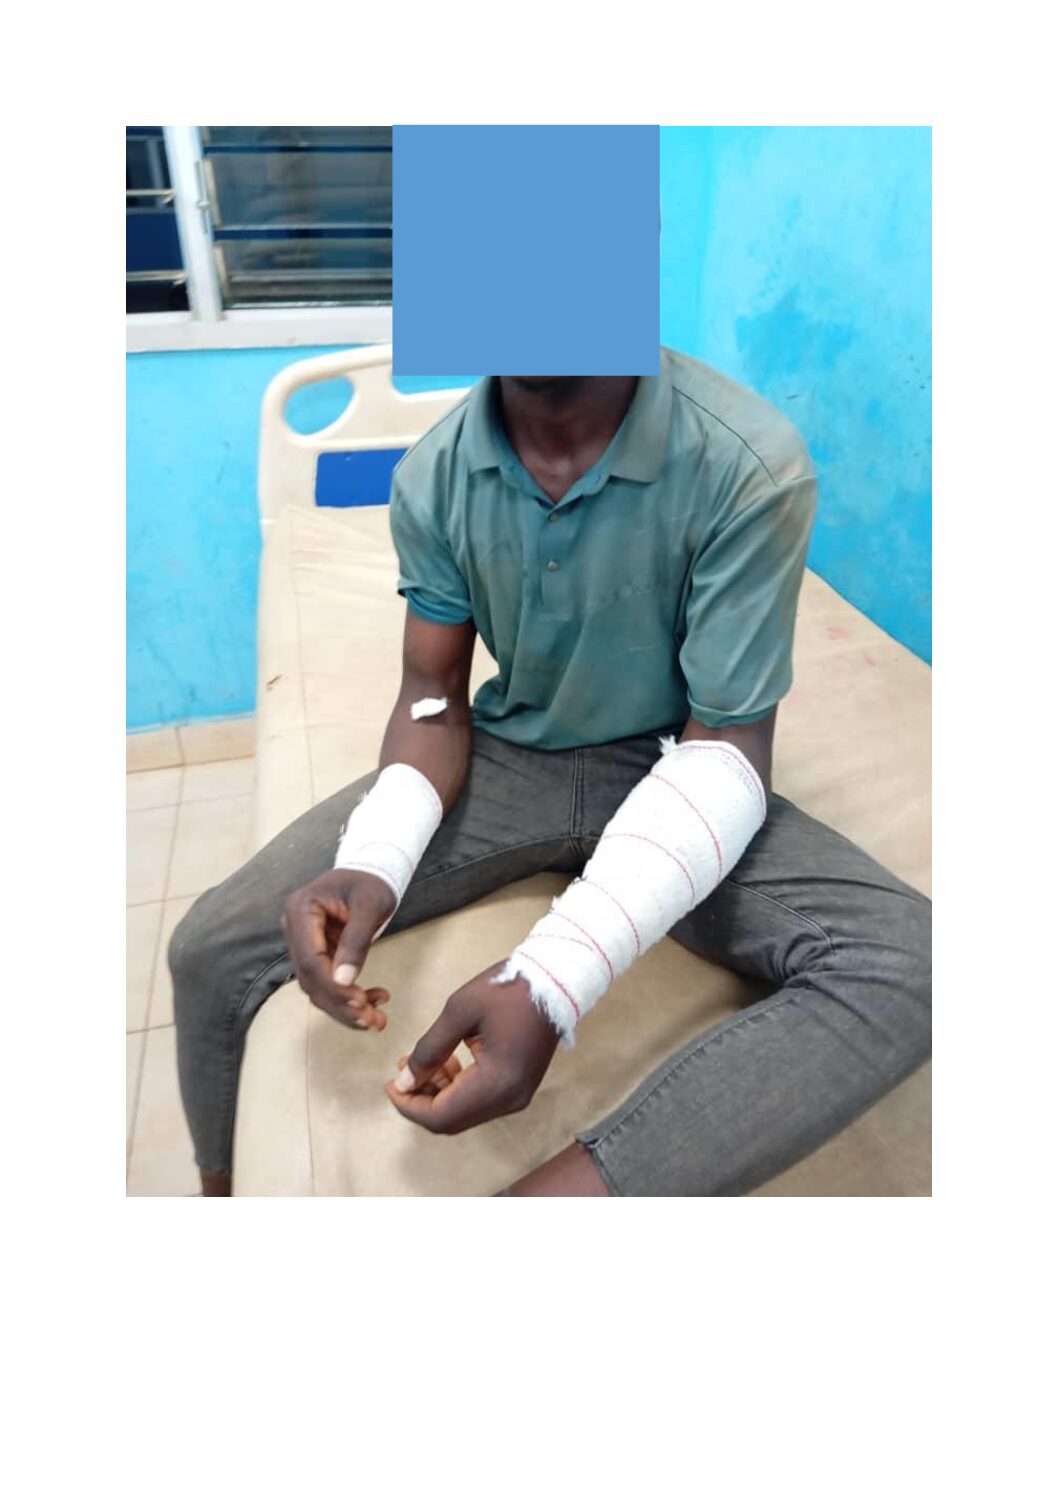 [Torture par électrocution à Duékoué] Un jeune accusé de vol de plaquettes d’œufs